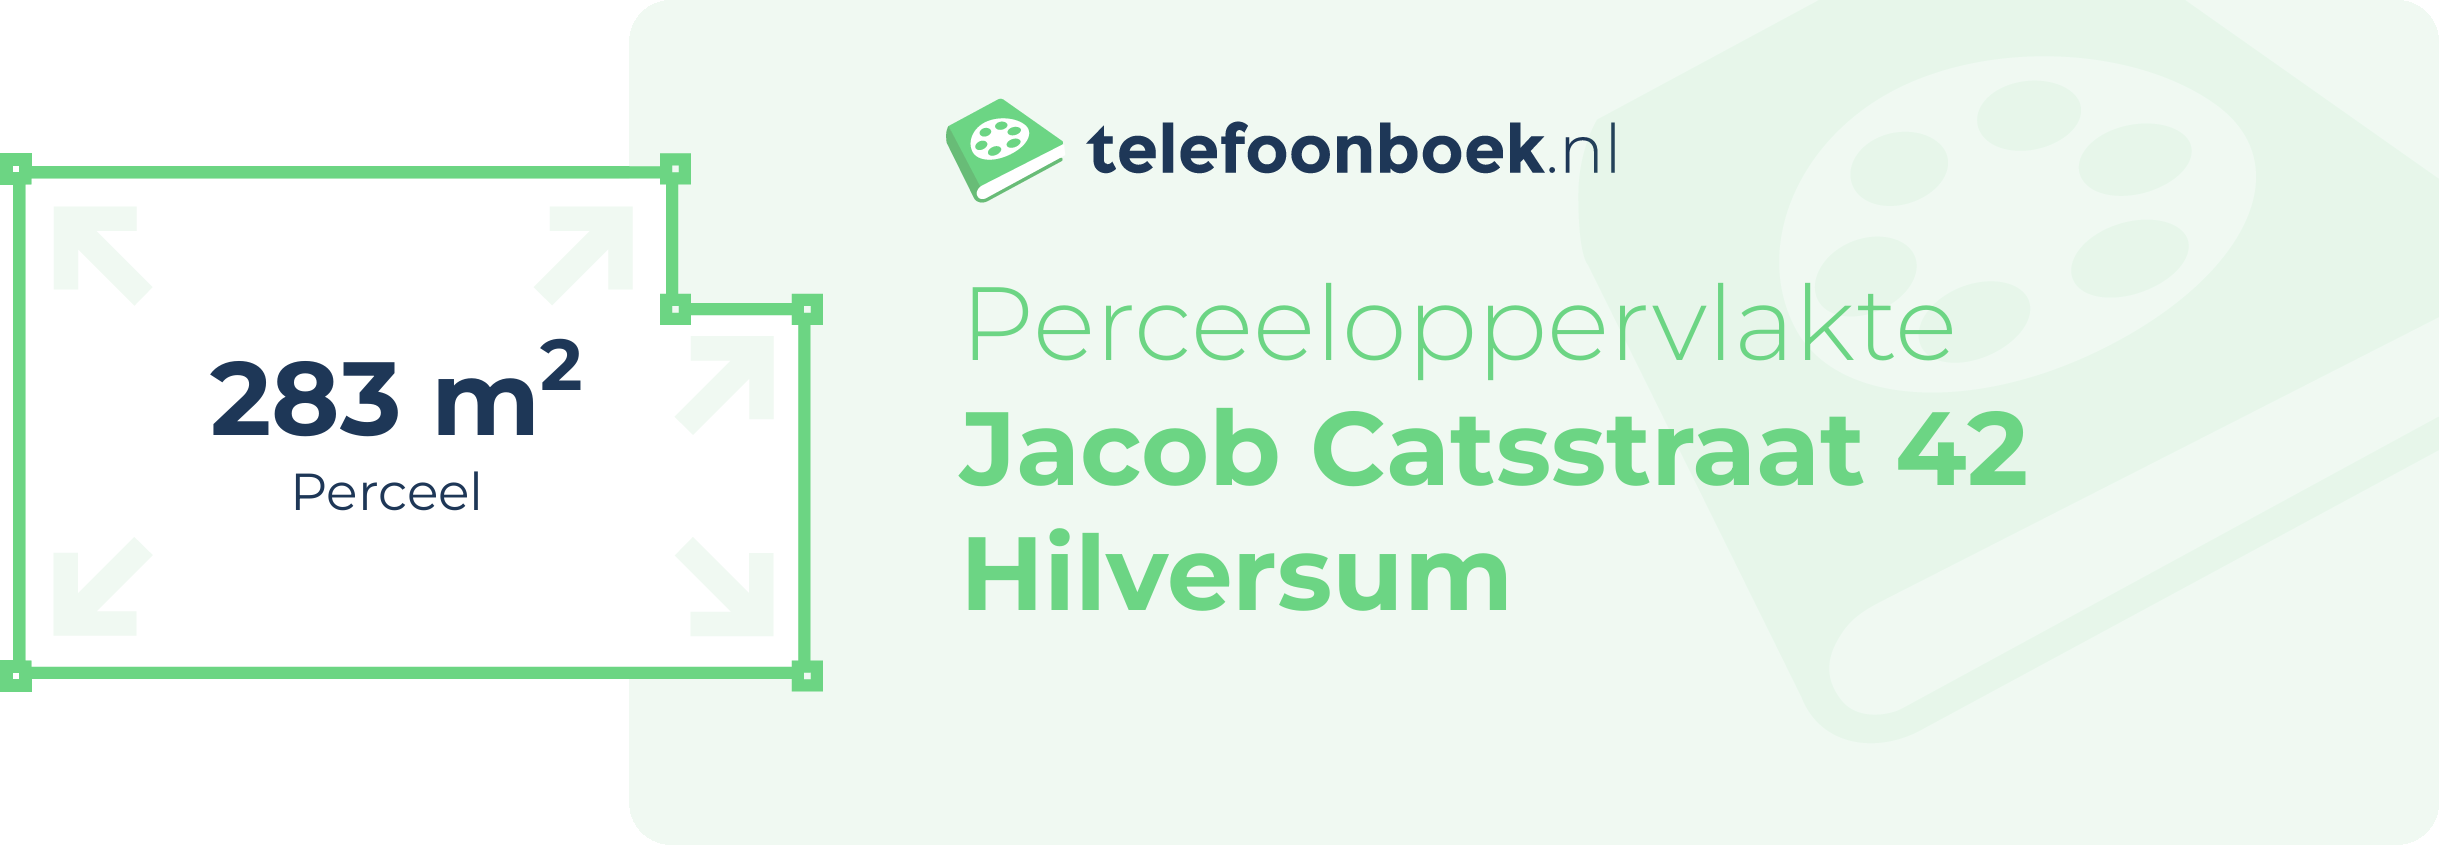 Perceeloppervlakte Jacob Catsstraat 42 Hilversum